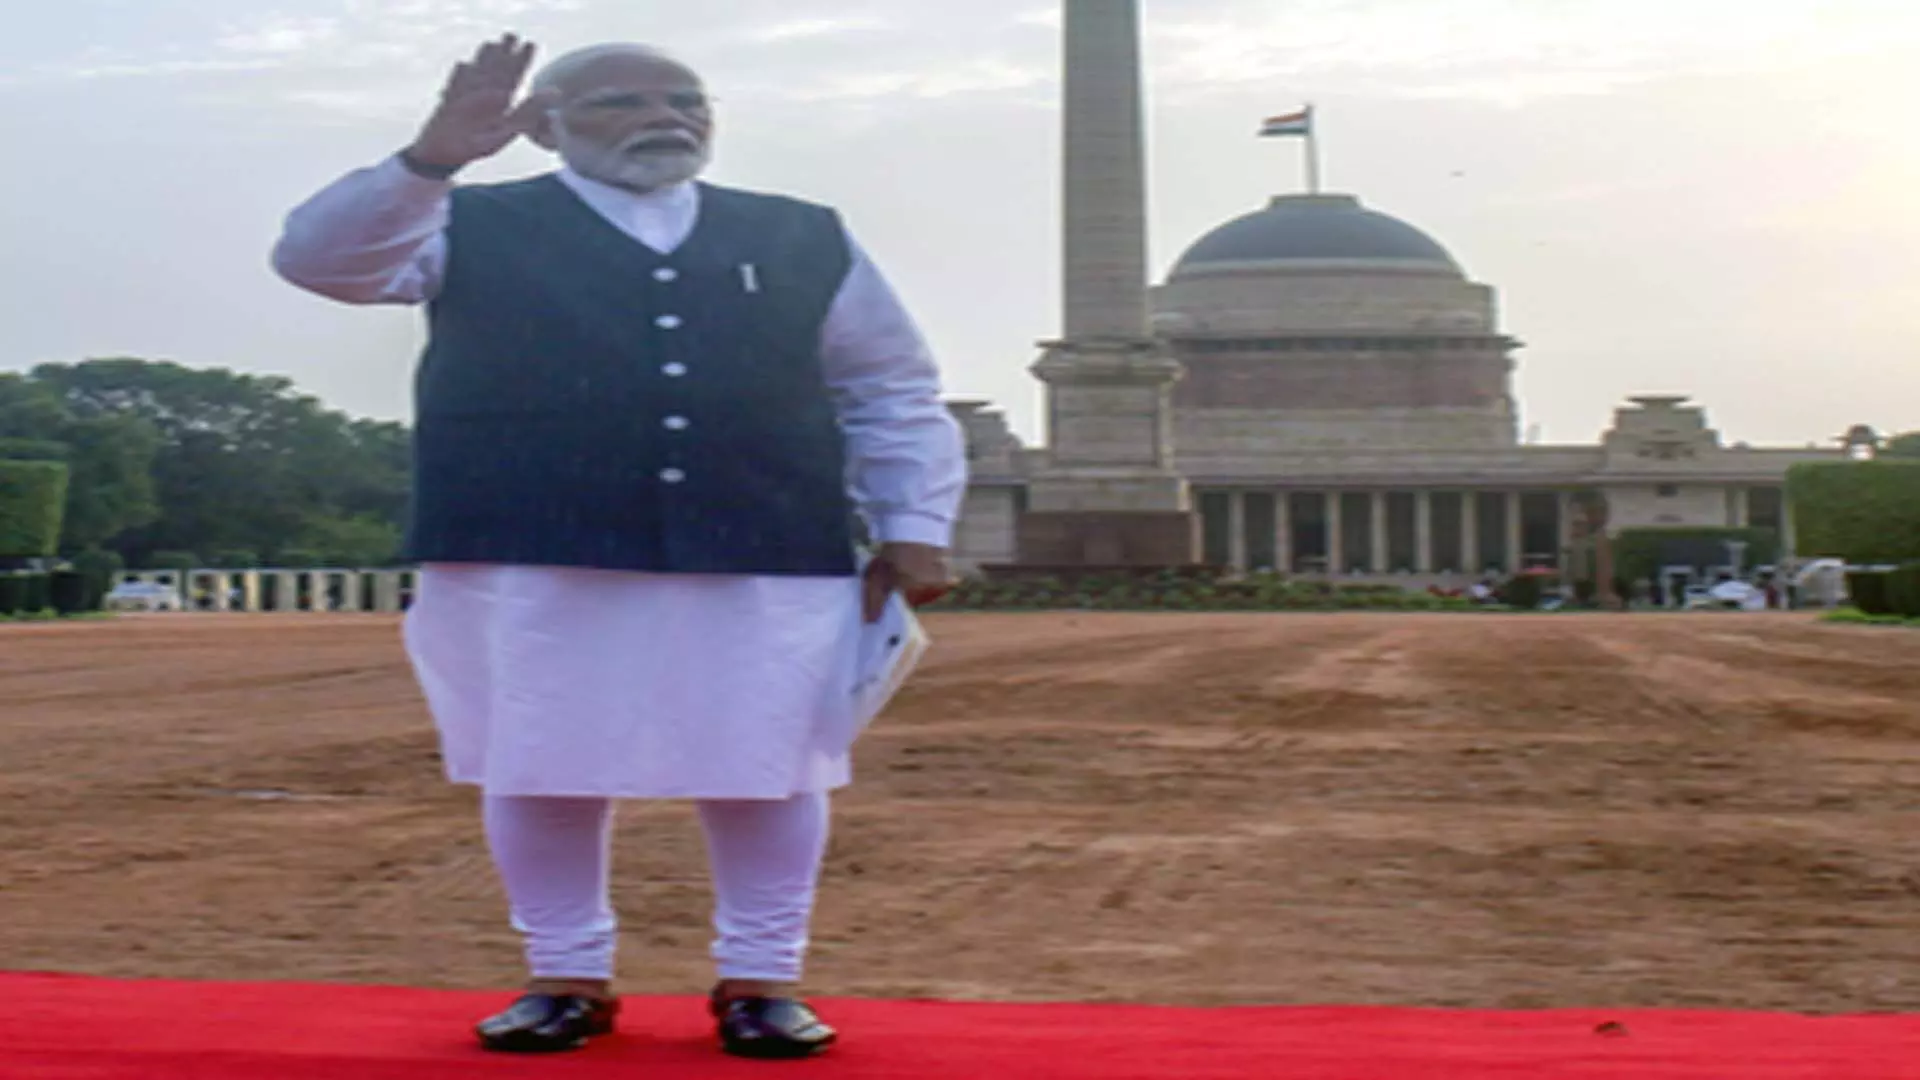 Delhi News: नरेंद्र मोदी आज शाम 7:15 बजे प्रधानमंत्री पद की शपथ लेंगे